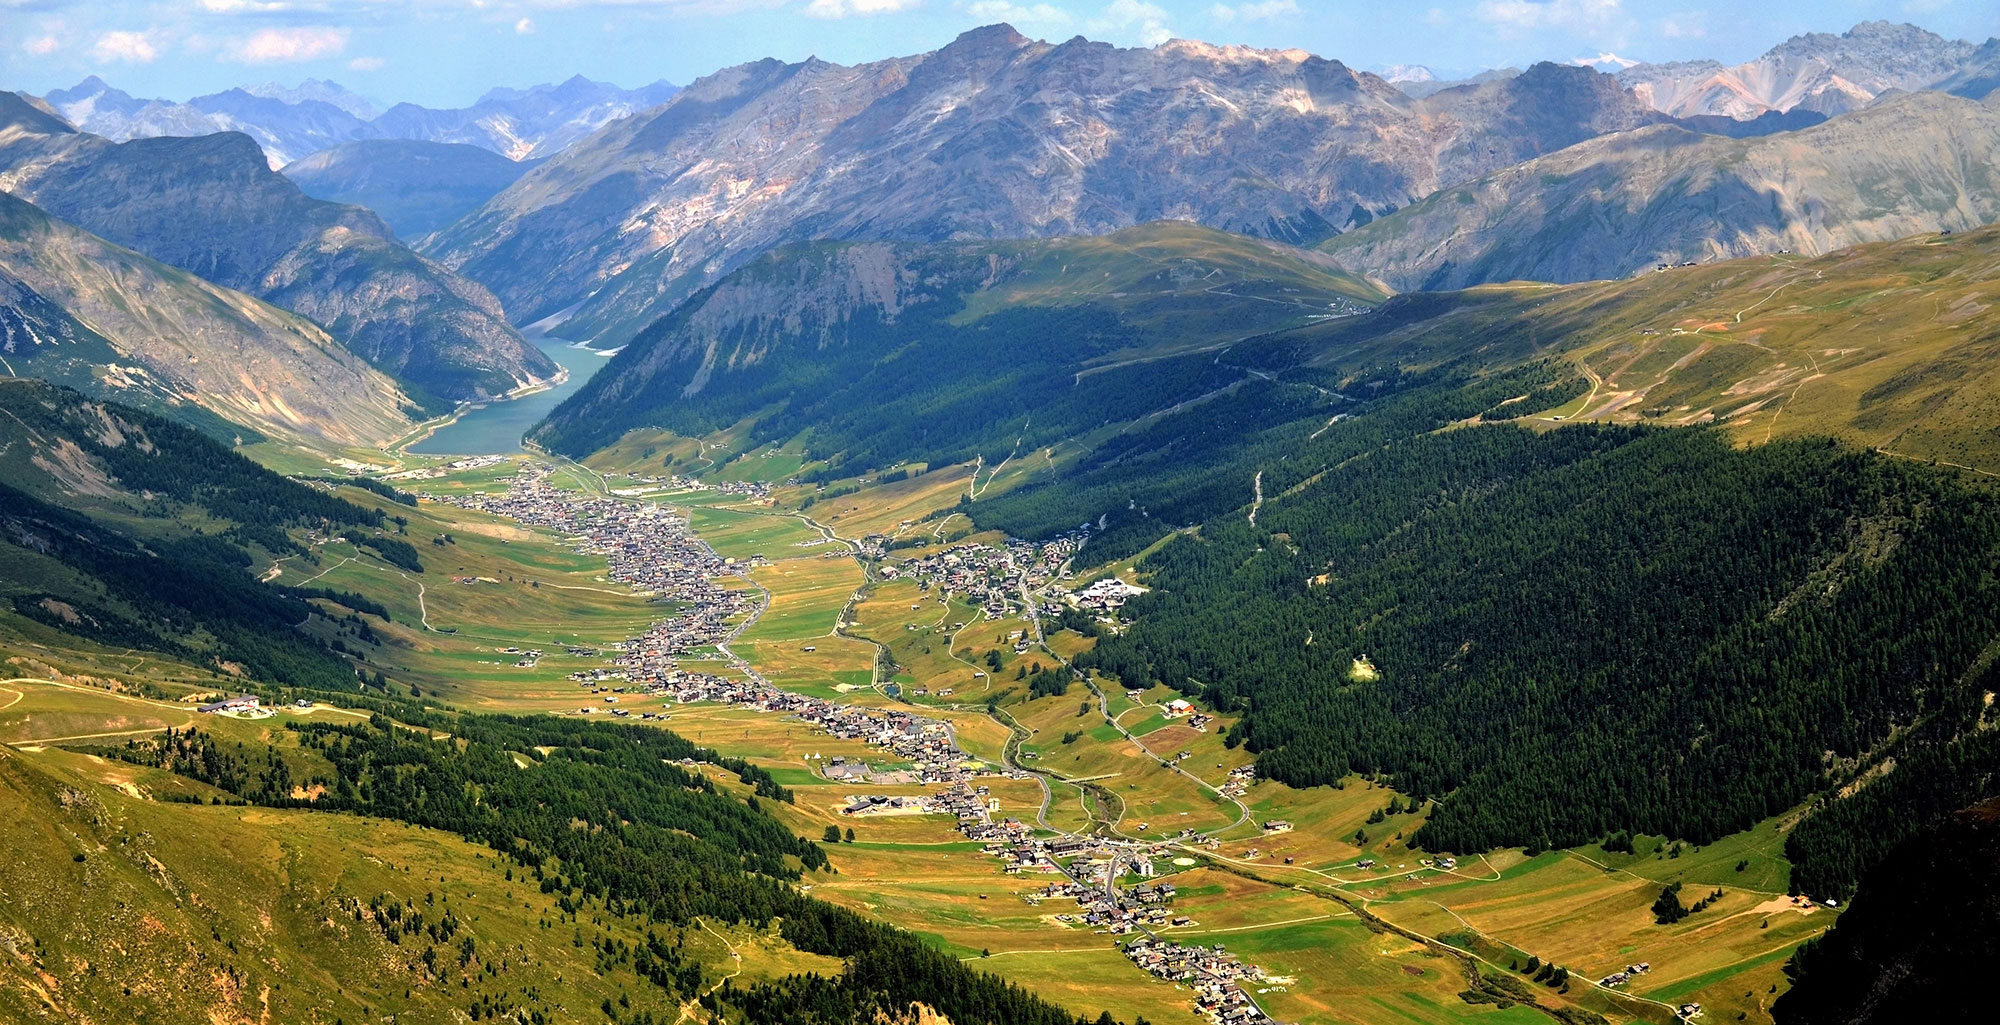 Forcola Pass and Bernina Pass